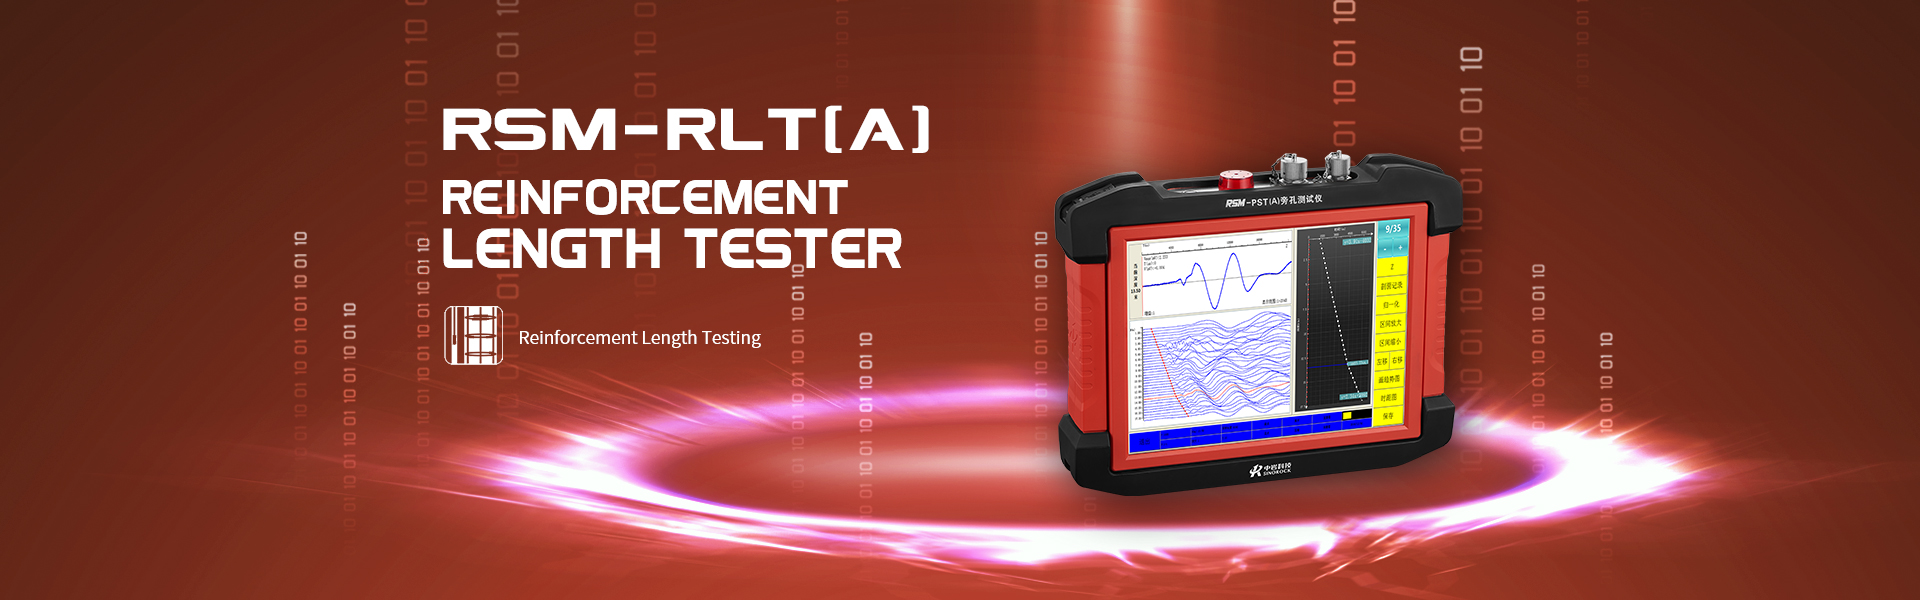 RSM-RLT(A) Reinforcement Length Tester